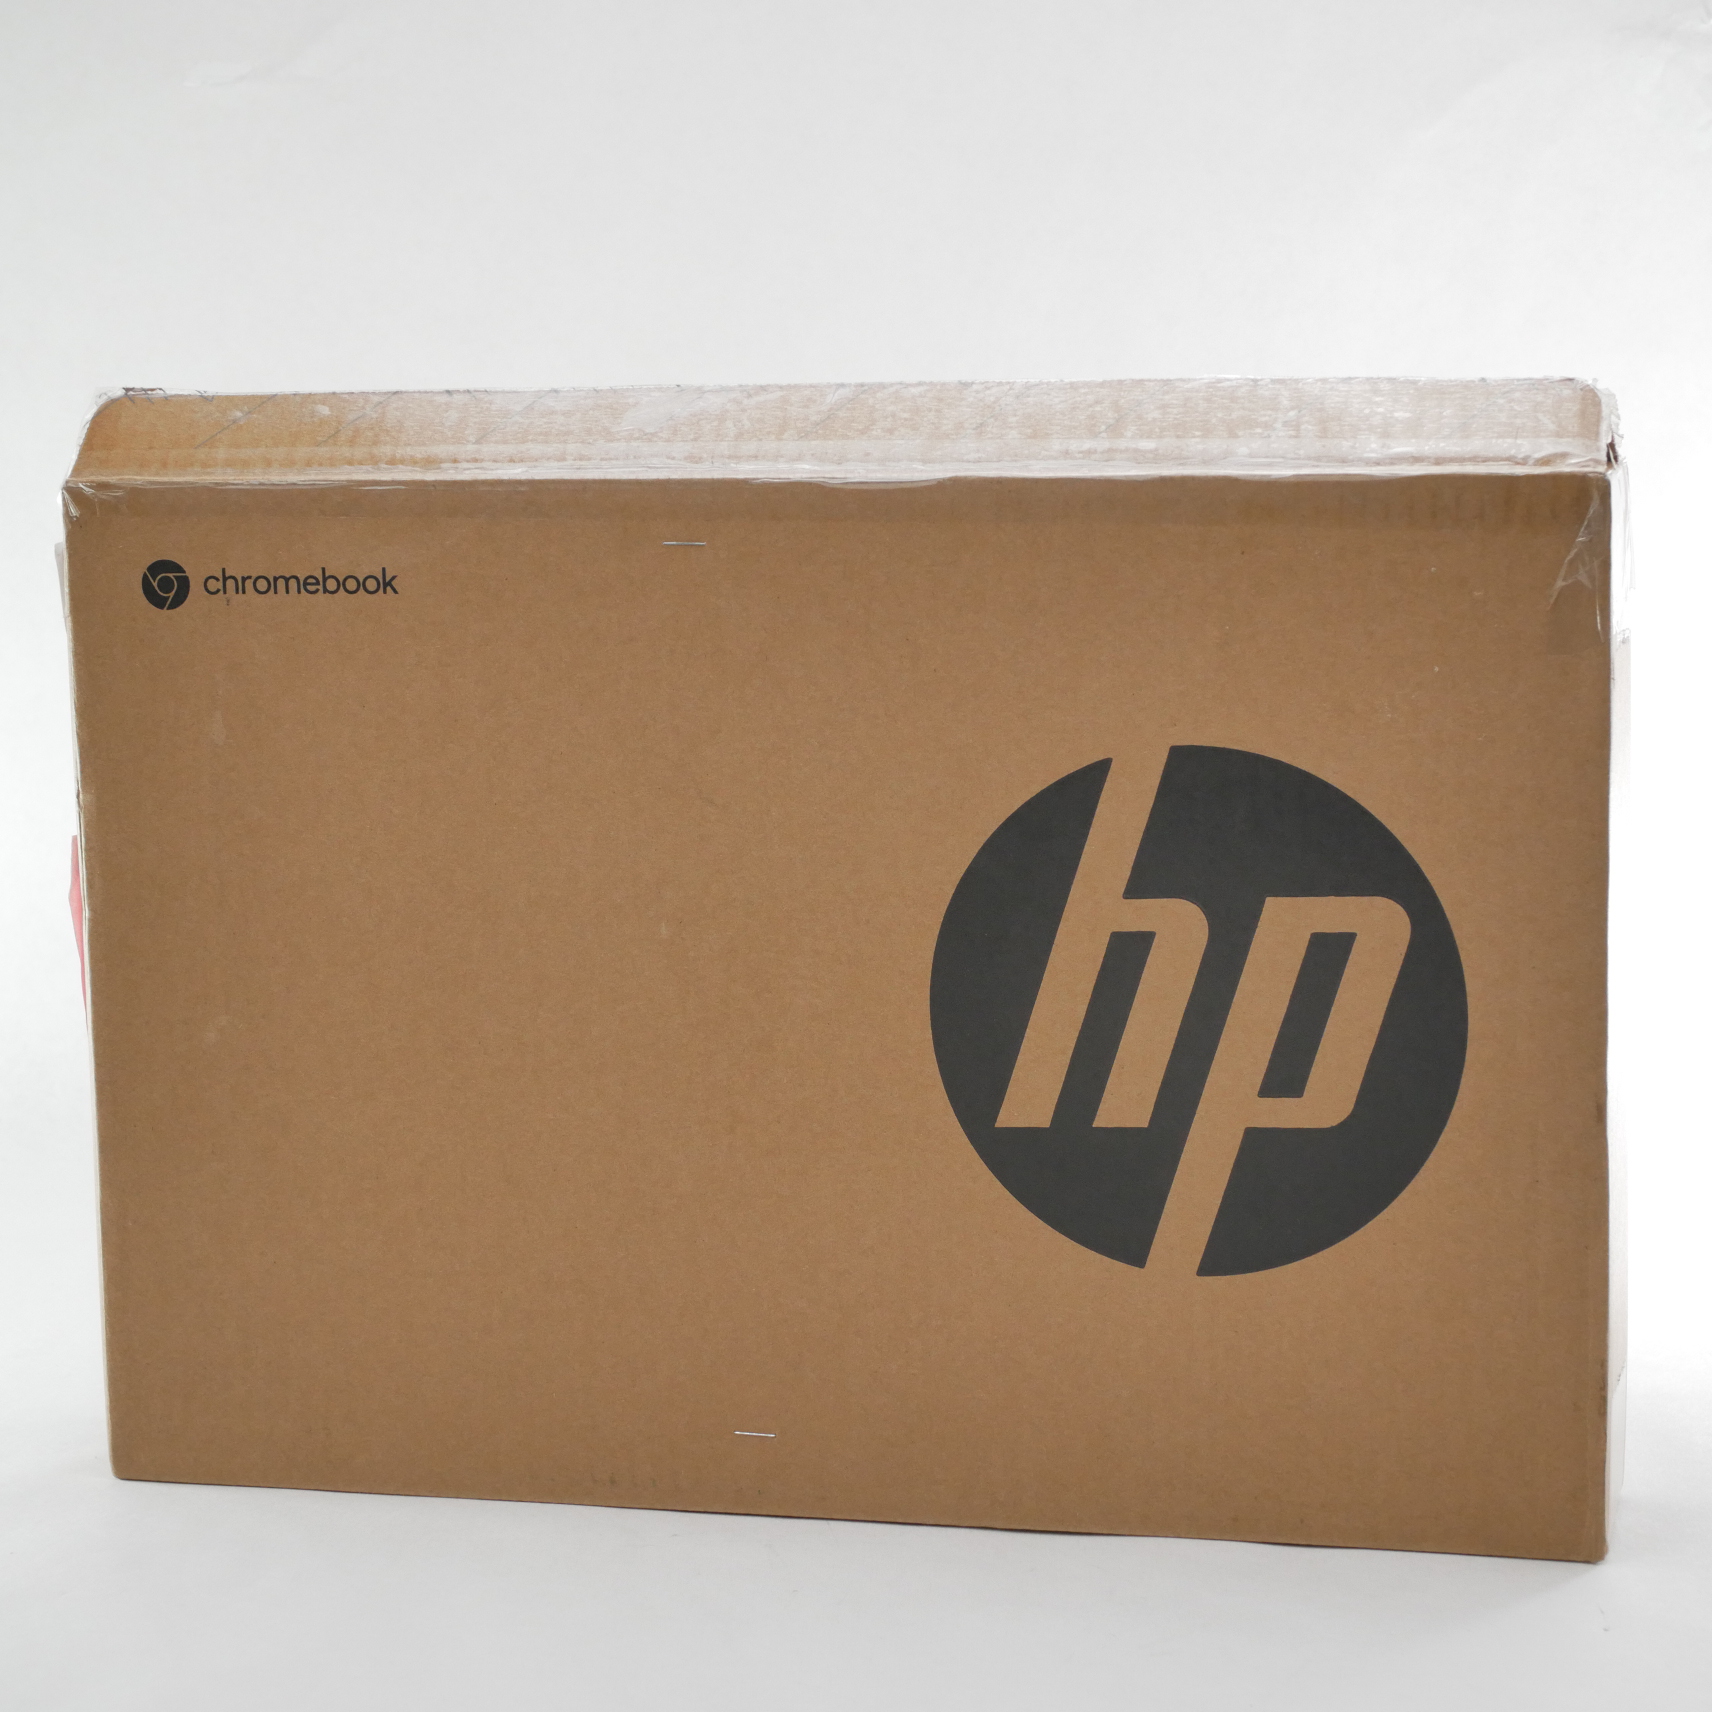 HP Pro C640 Chromebook 14" touch I5-10310U 1.7GHz RAM 8Gb eMMC 64Gb 35G92EC#ABA